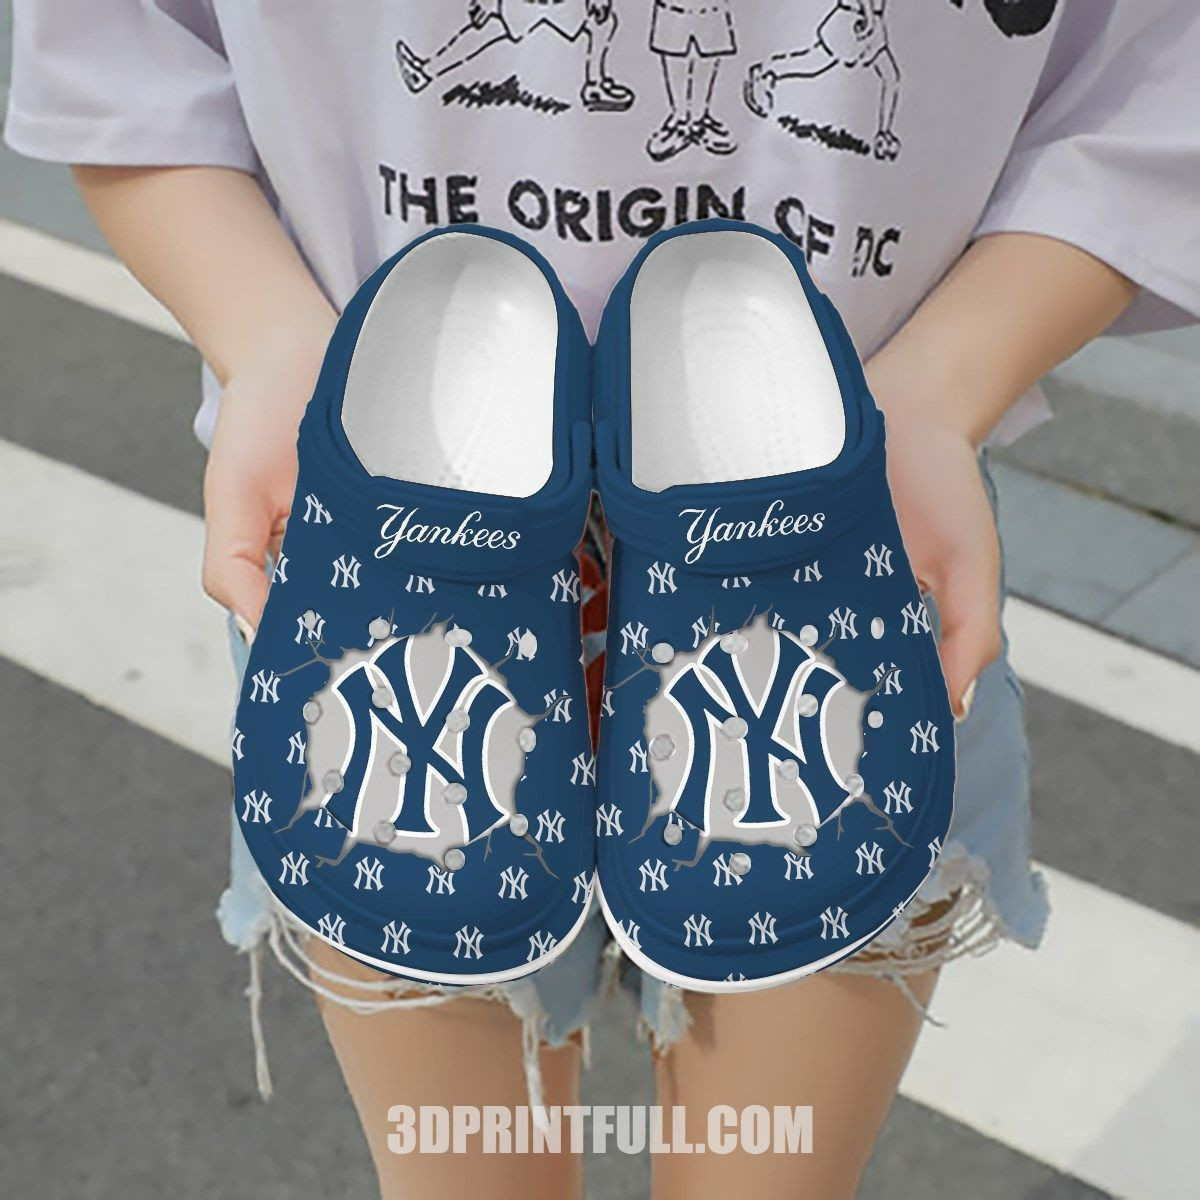 New York Yankees Mlb Full Logo Gift For Lover Rubber Crocs Clog Shoescrocband